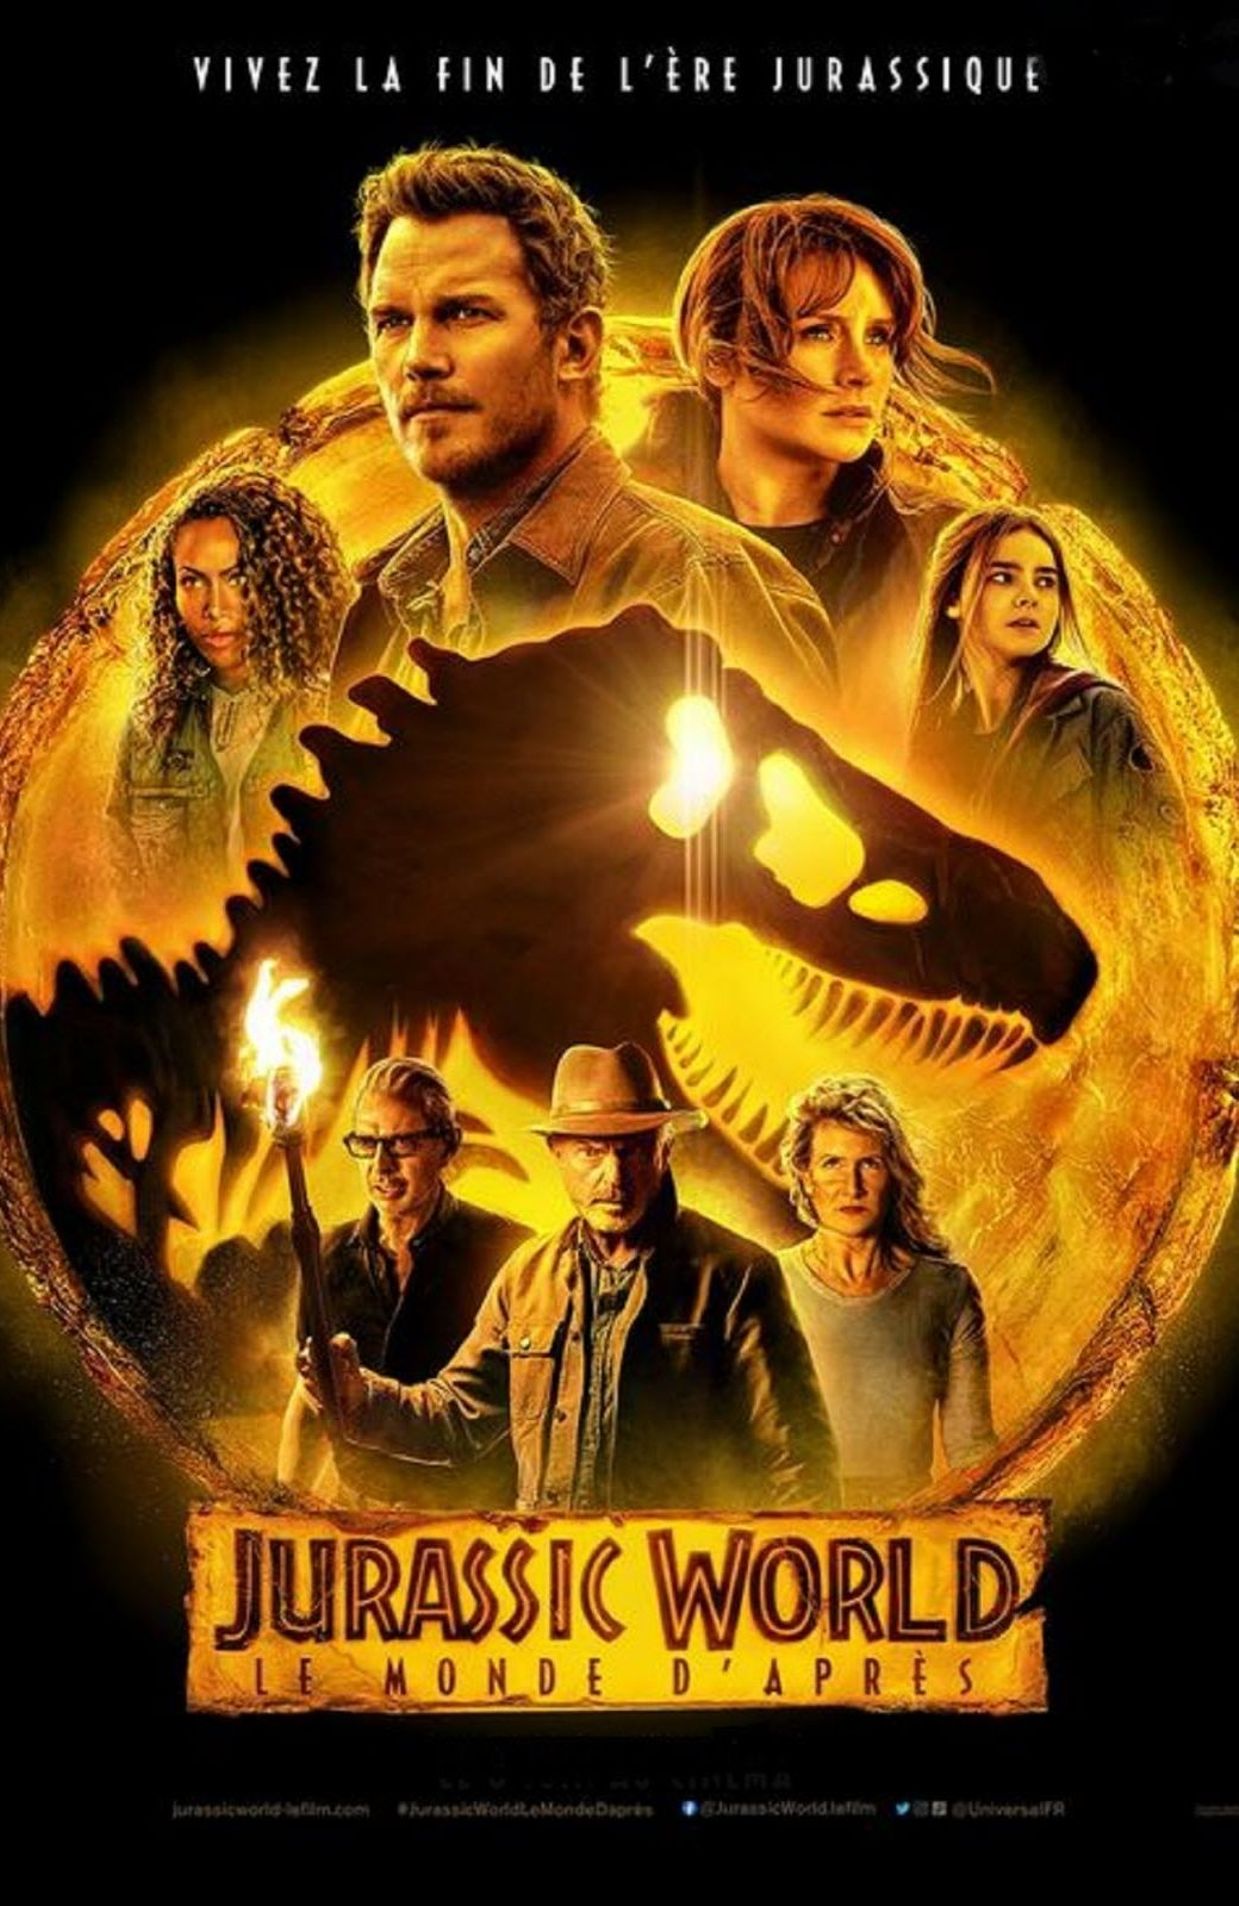 Jurassic World, le monde d'après